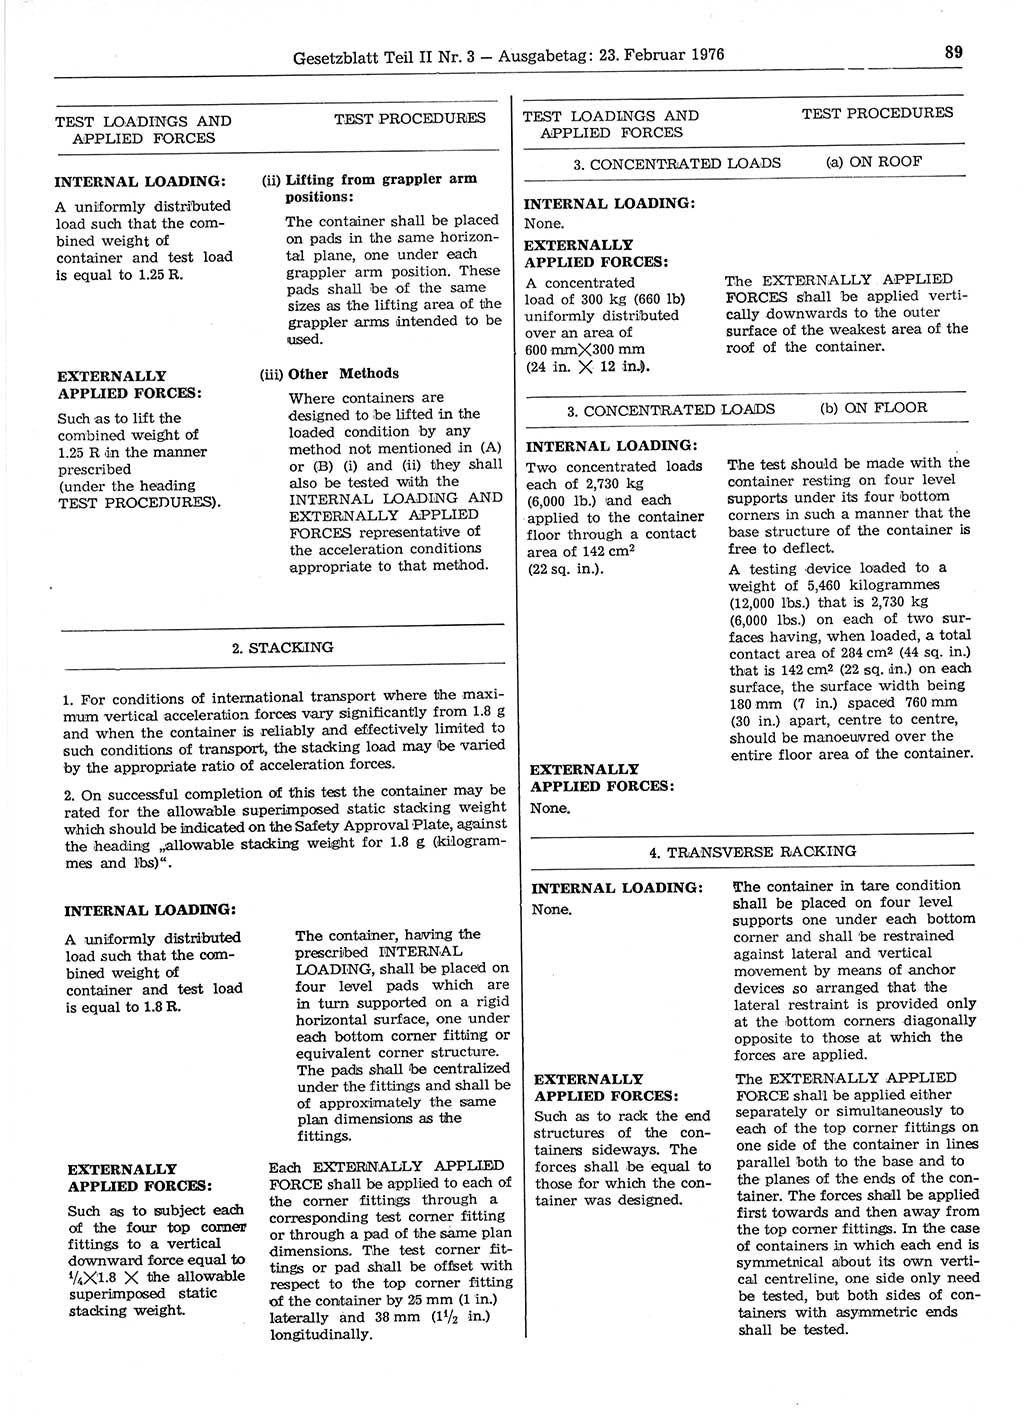 Gesetzblatt (GBl.) der Deutschen Demokratischen Republik (DDR) Teil ⅠⅠ 1976, Seite 89 (GBl. DDR ⅠⅠ 1976, S. 89)